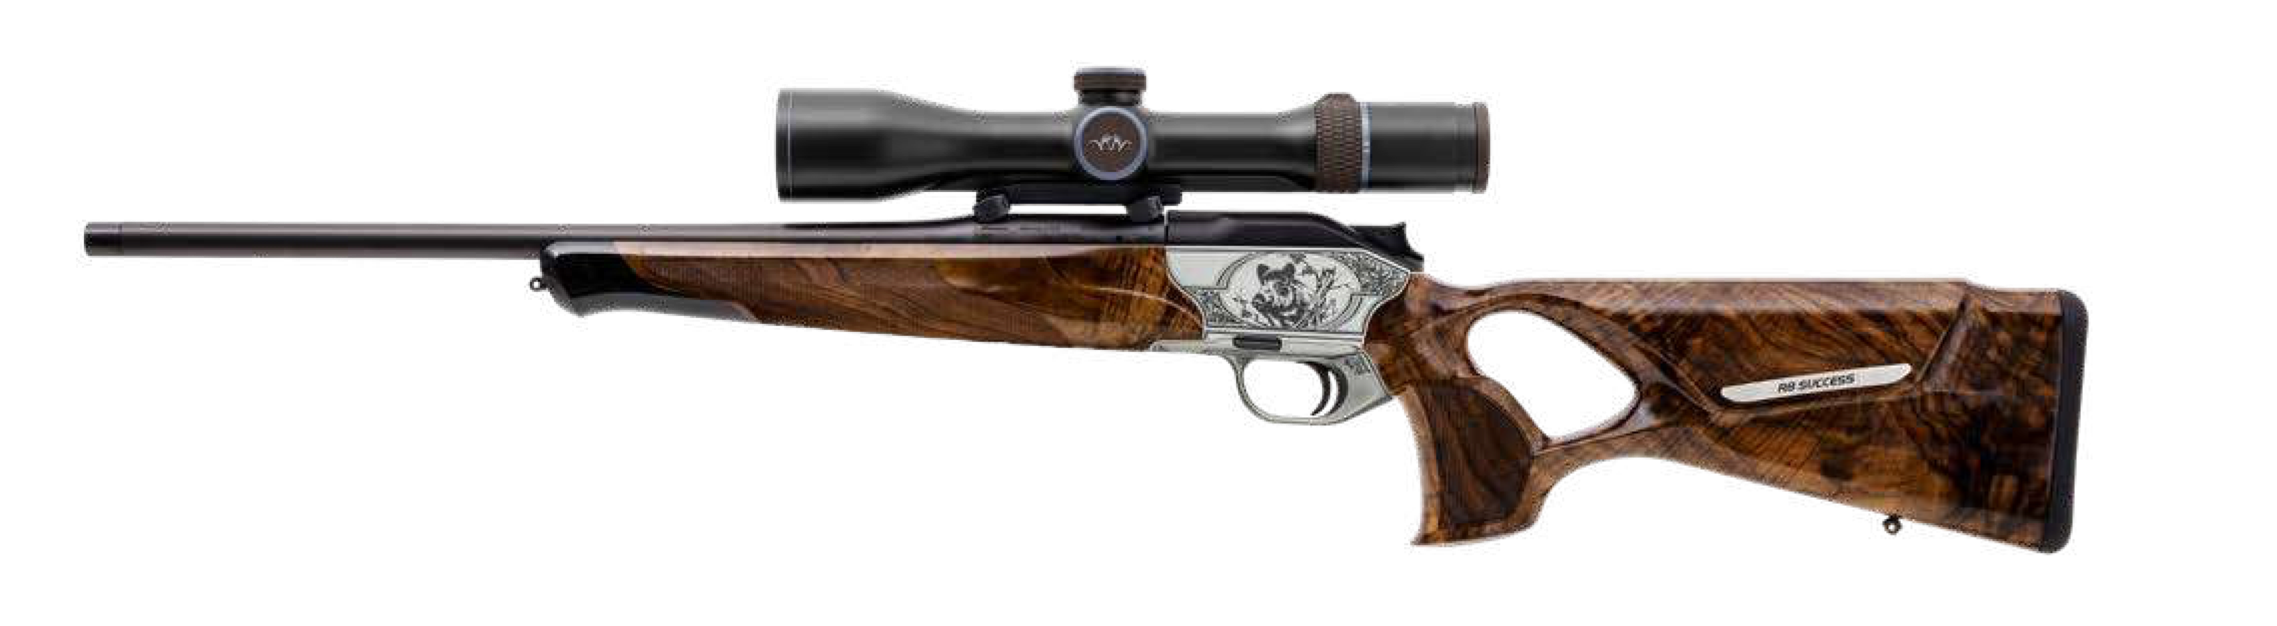 Blaser R8, el arma de caza deportiva más polivalente - ClassPaper